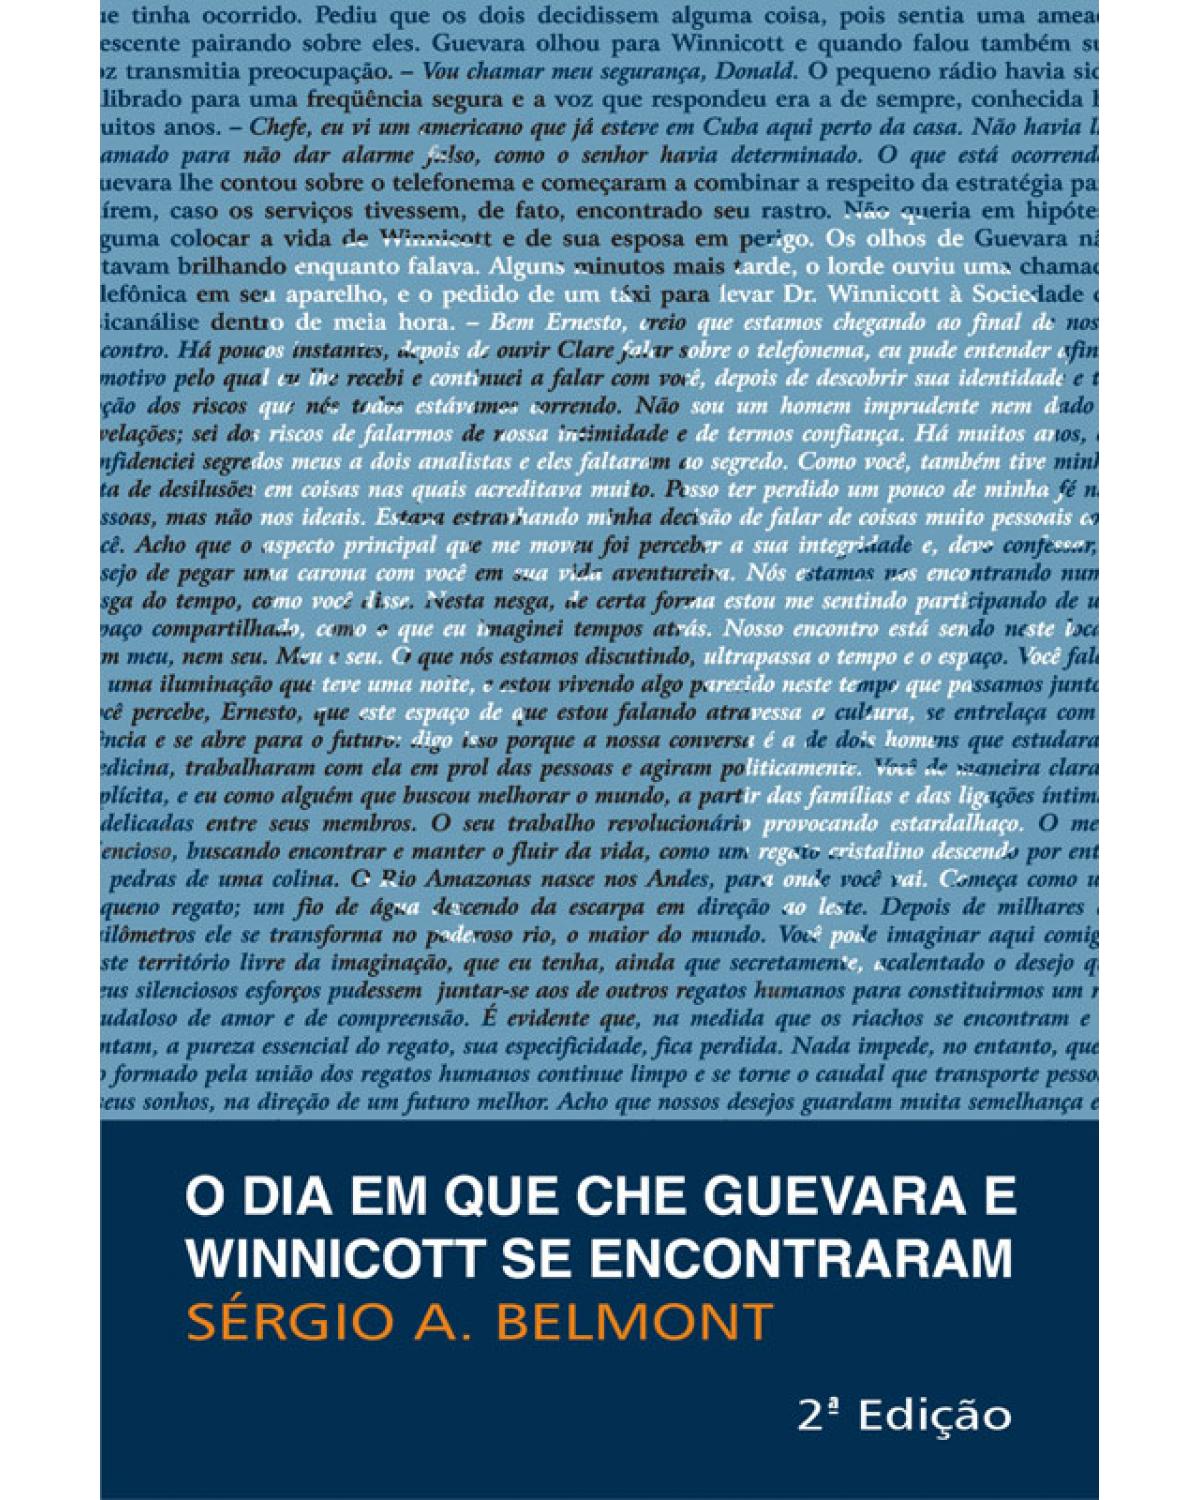 O dia em que Che Guevara e Winnicott se encontraram - 2ª Edição | 2009